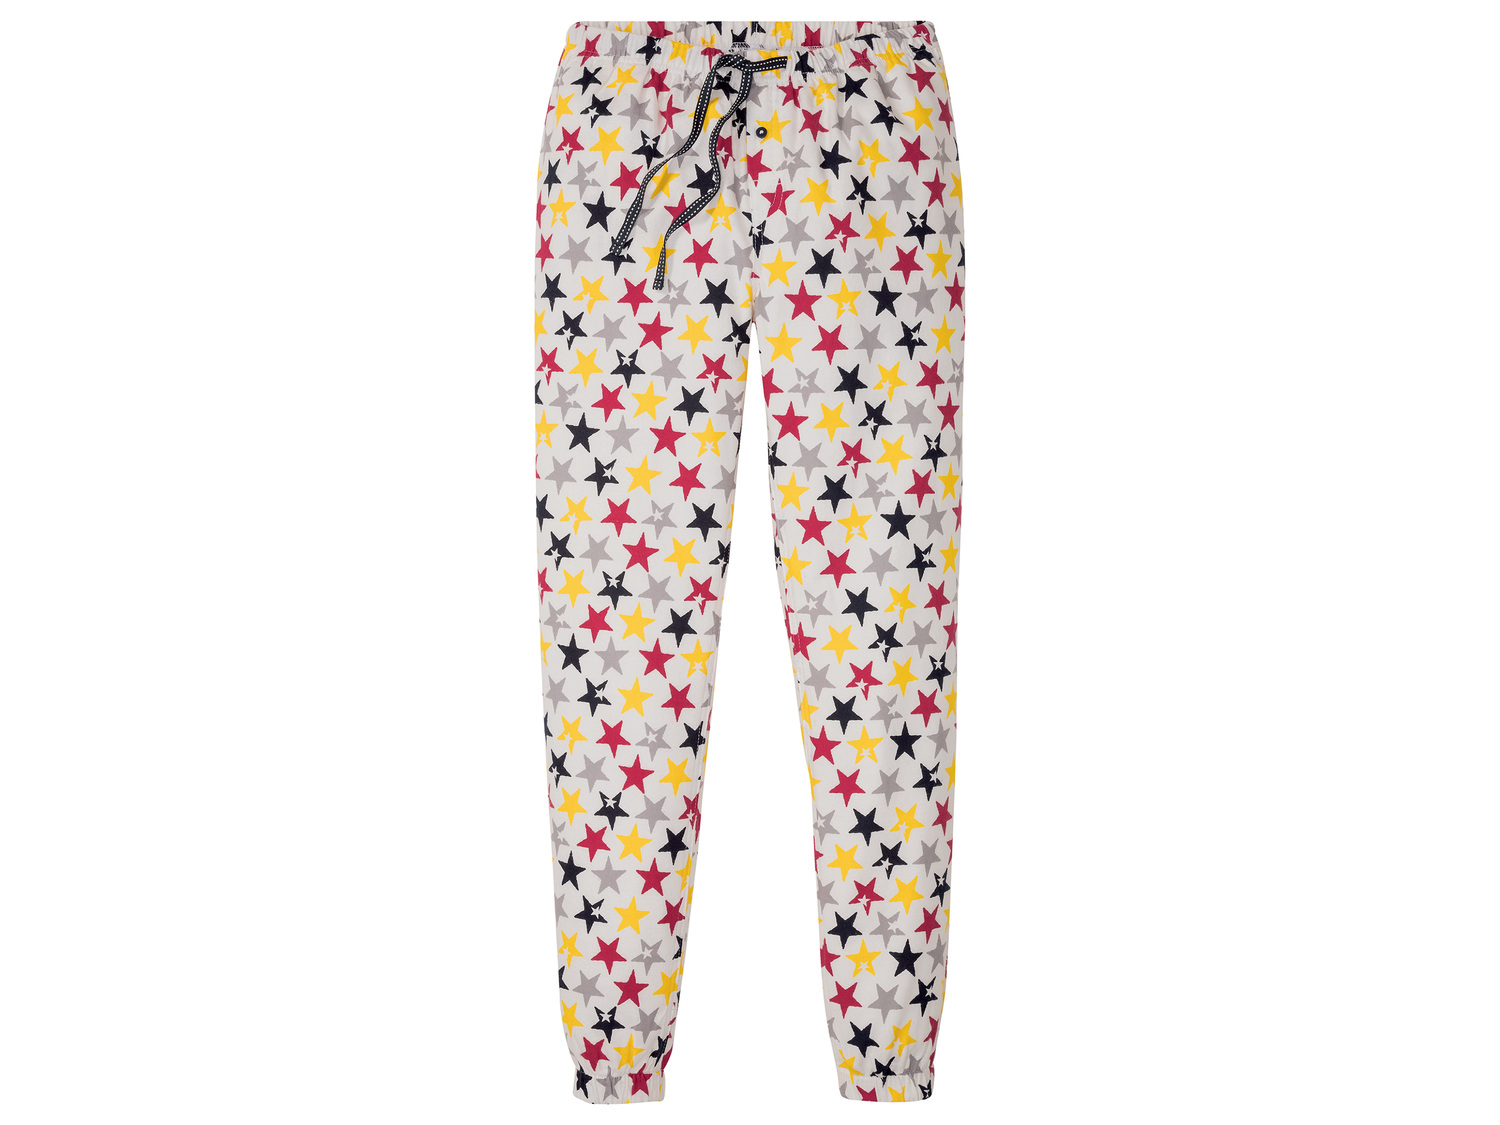 Bas de pyjama femme , le prix 5.99 € 
- Du S au XL selon modèle.
- Ex. 100 ...